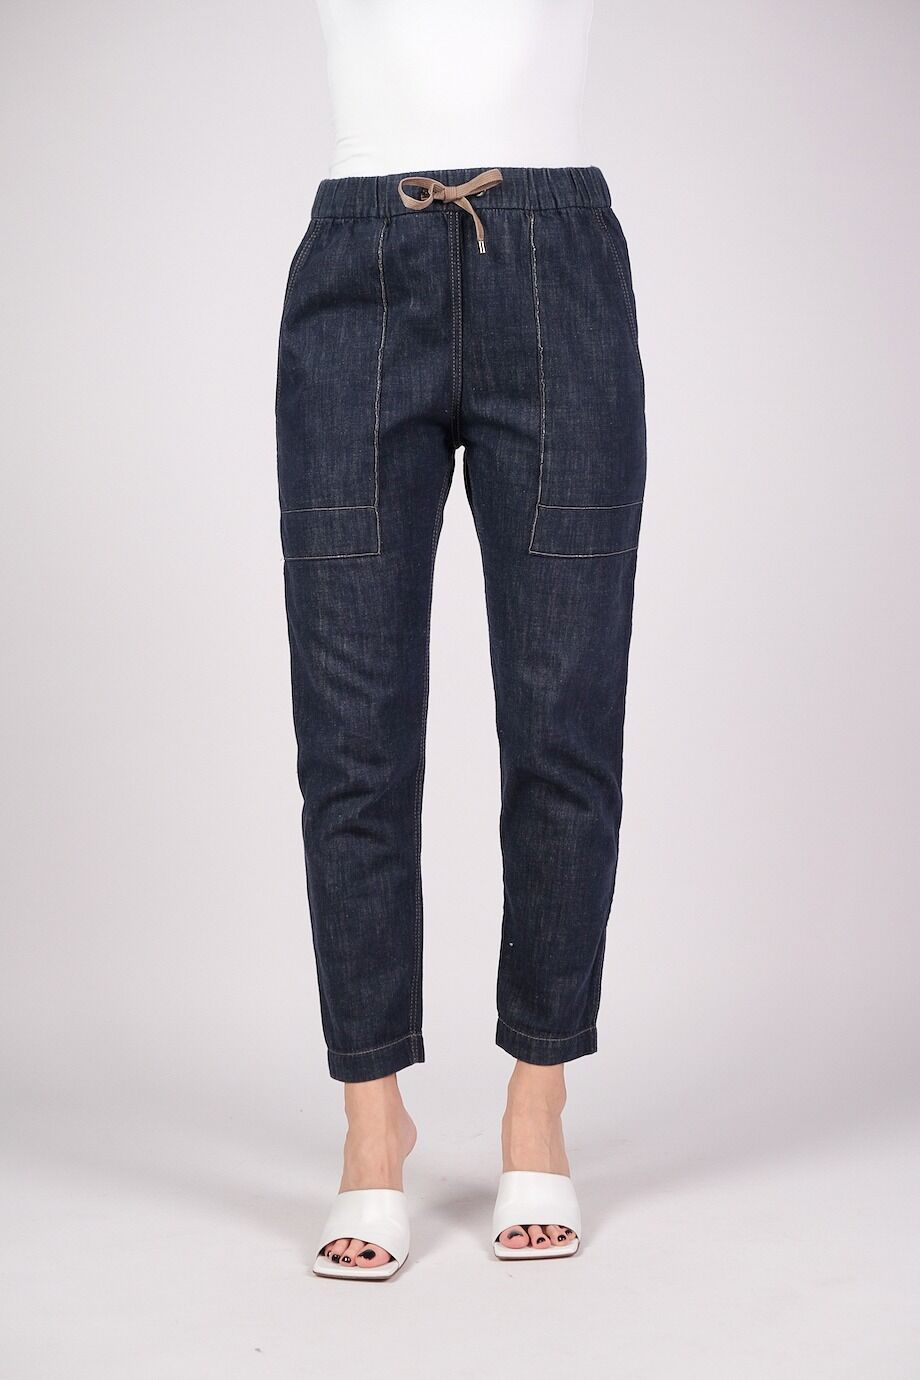 image 2 Джинсовые брюки темно-синего цвета на резинке